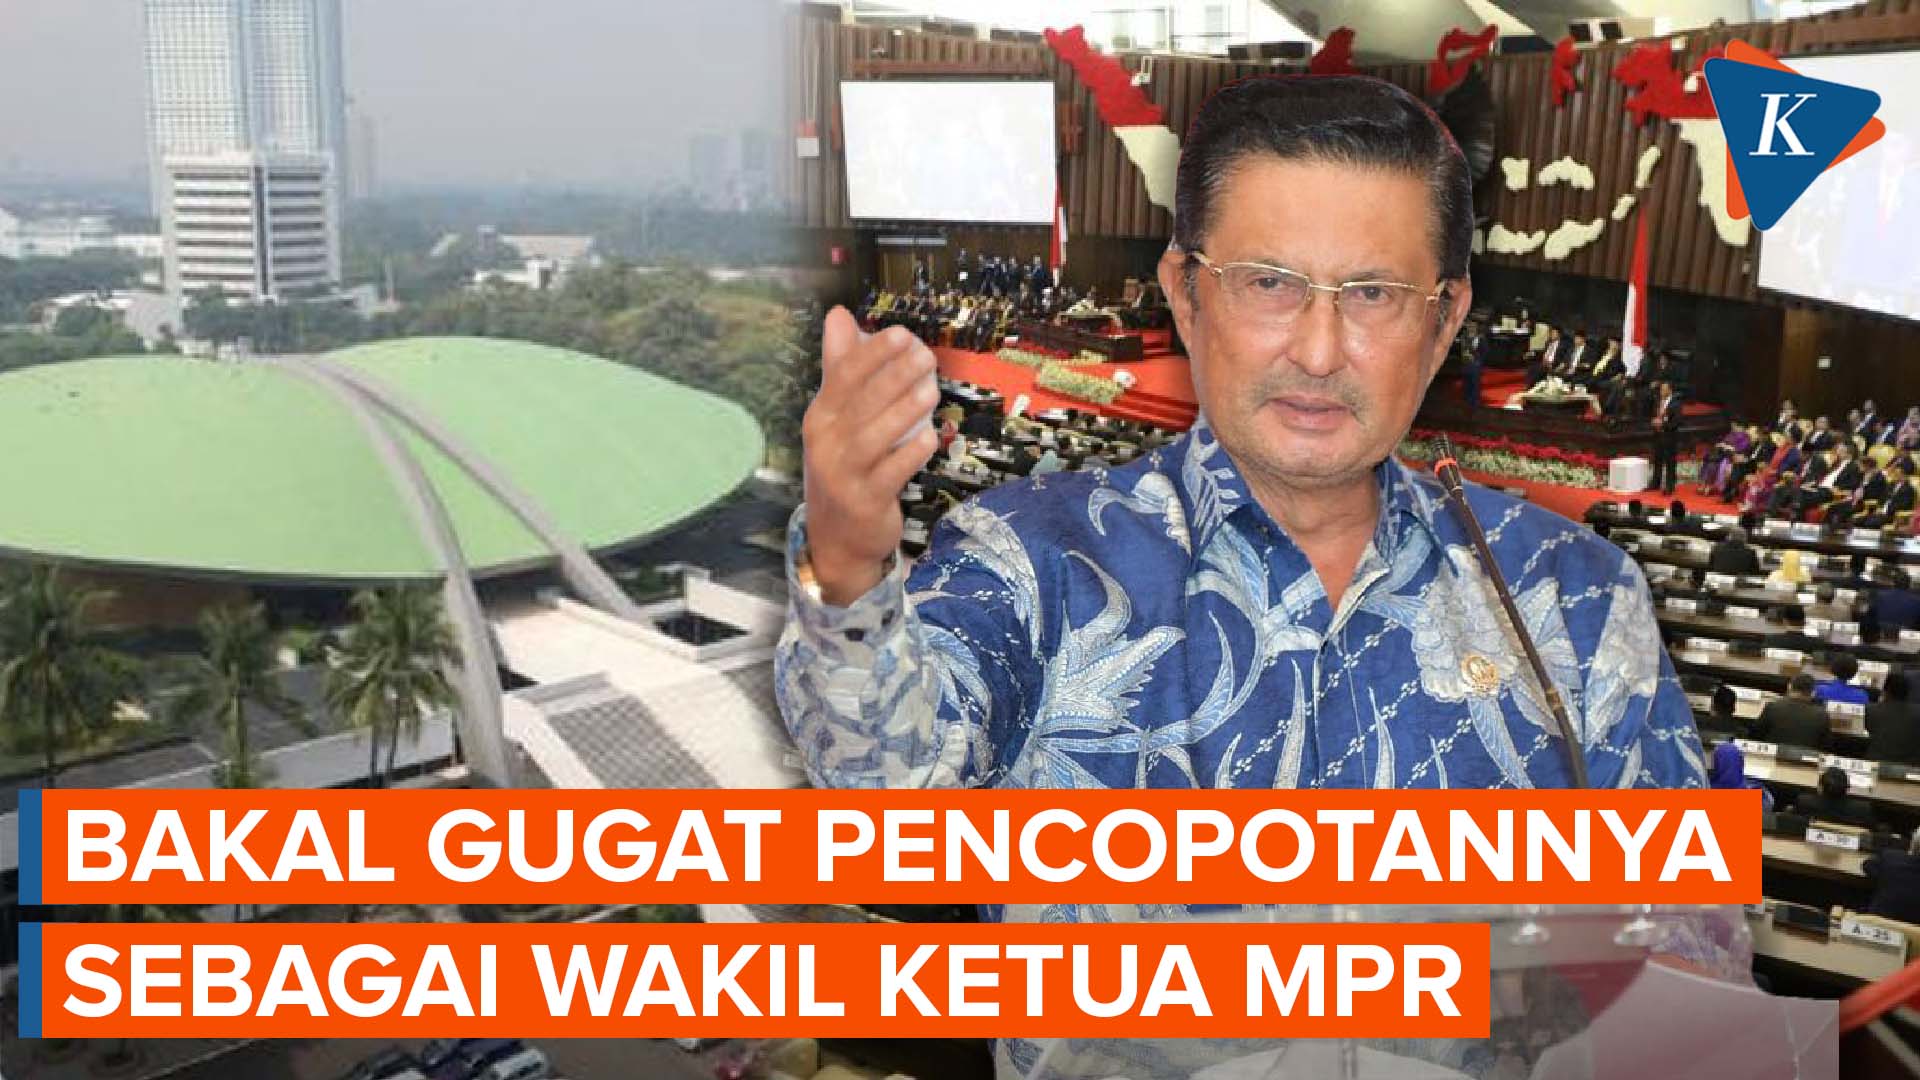 Fadel Muhammad Anggap Pencopotannya Sebagai Wakil Ketua MPR Inkonstitusional